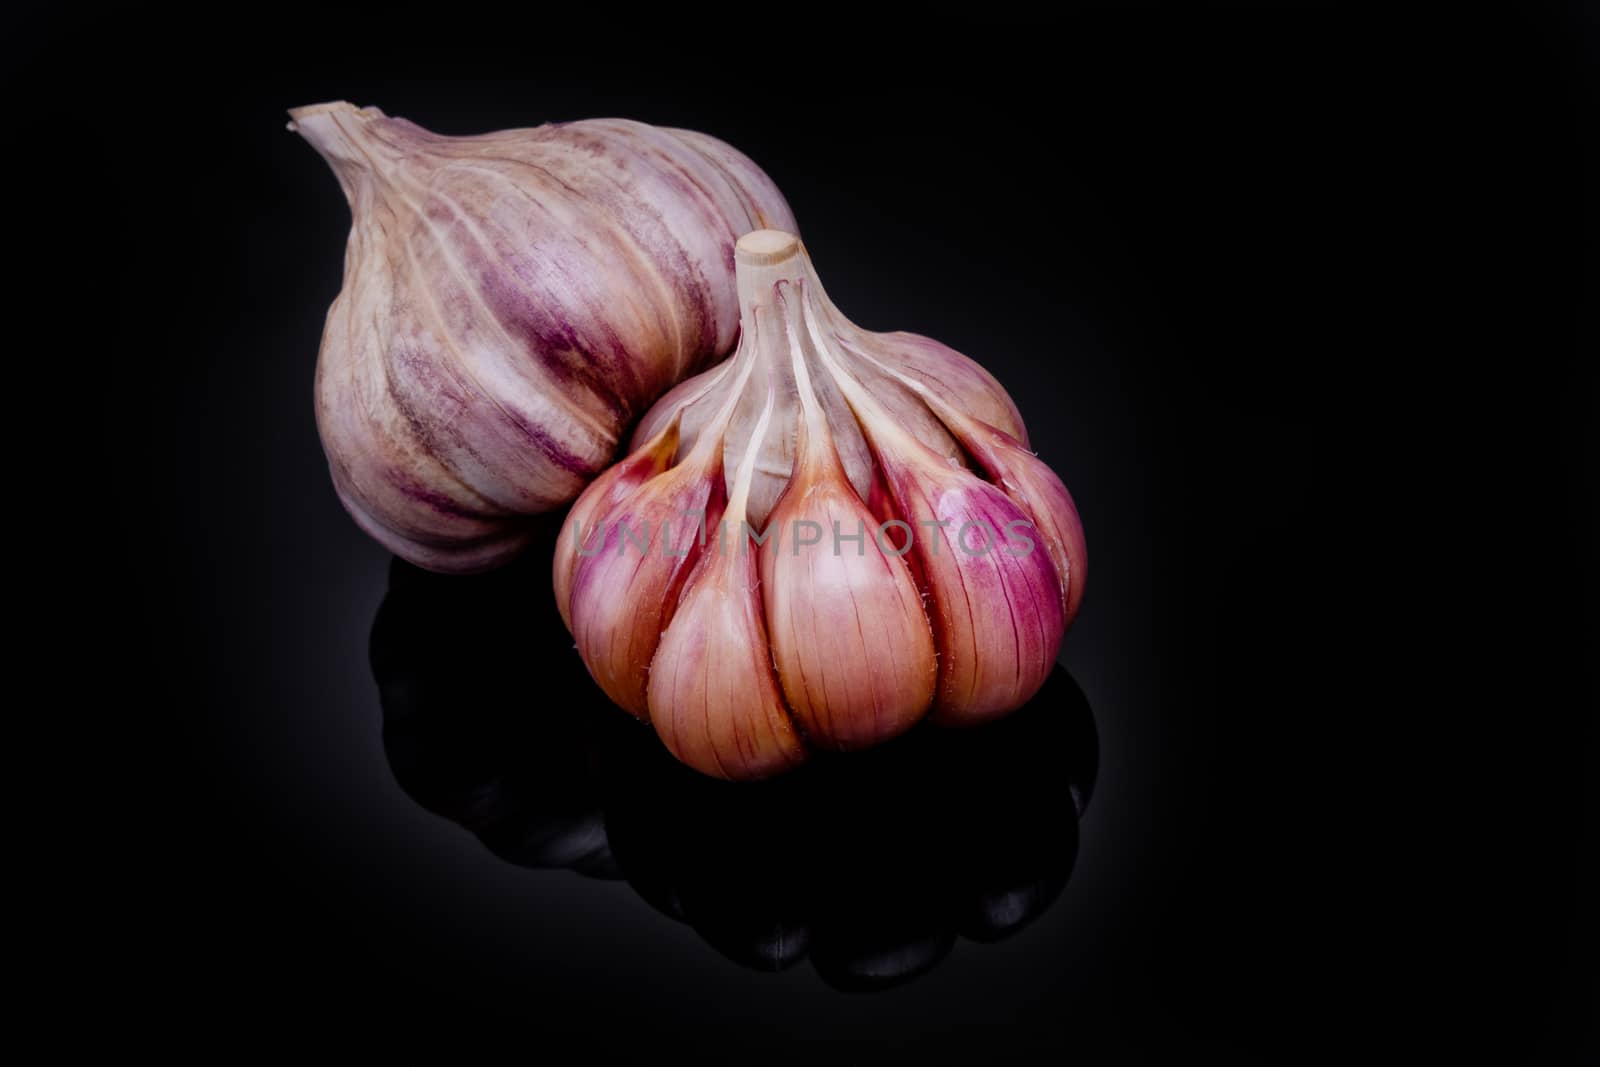 Fresh garlic bulbs on a black background.